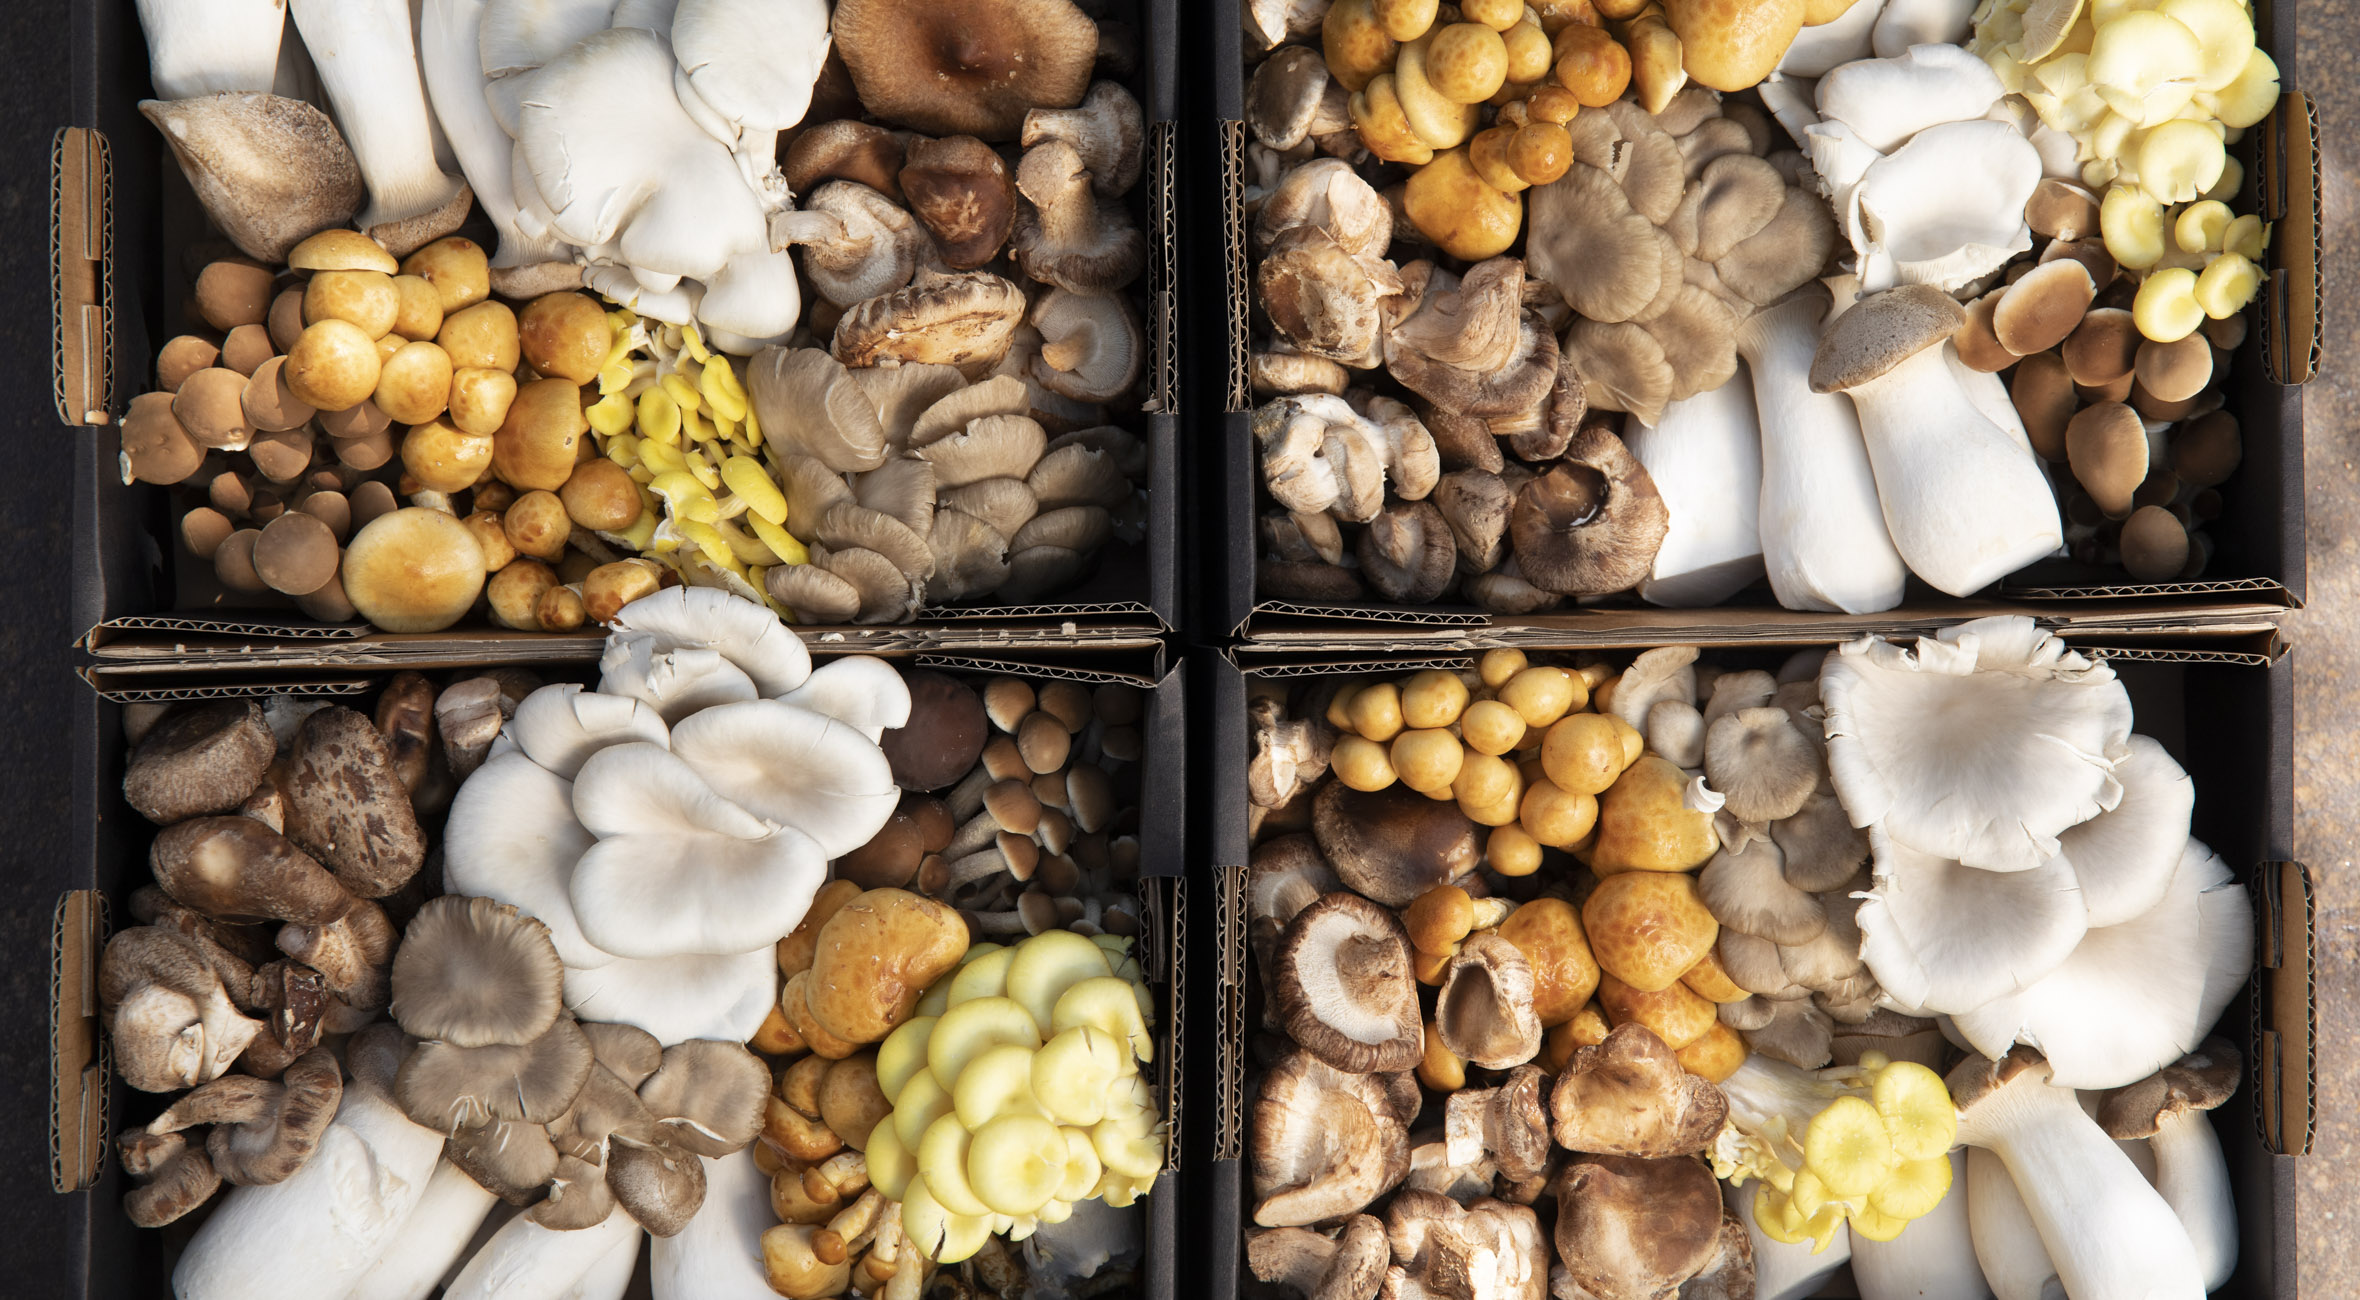 Mixboks med øko svampe fra BYGAARD på Refshaleøen – Besøg Michelin-restauranternes svampepusher og få svampe dyrket i upcycled containere